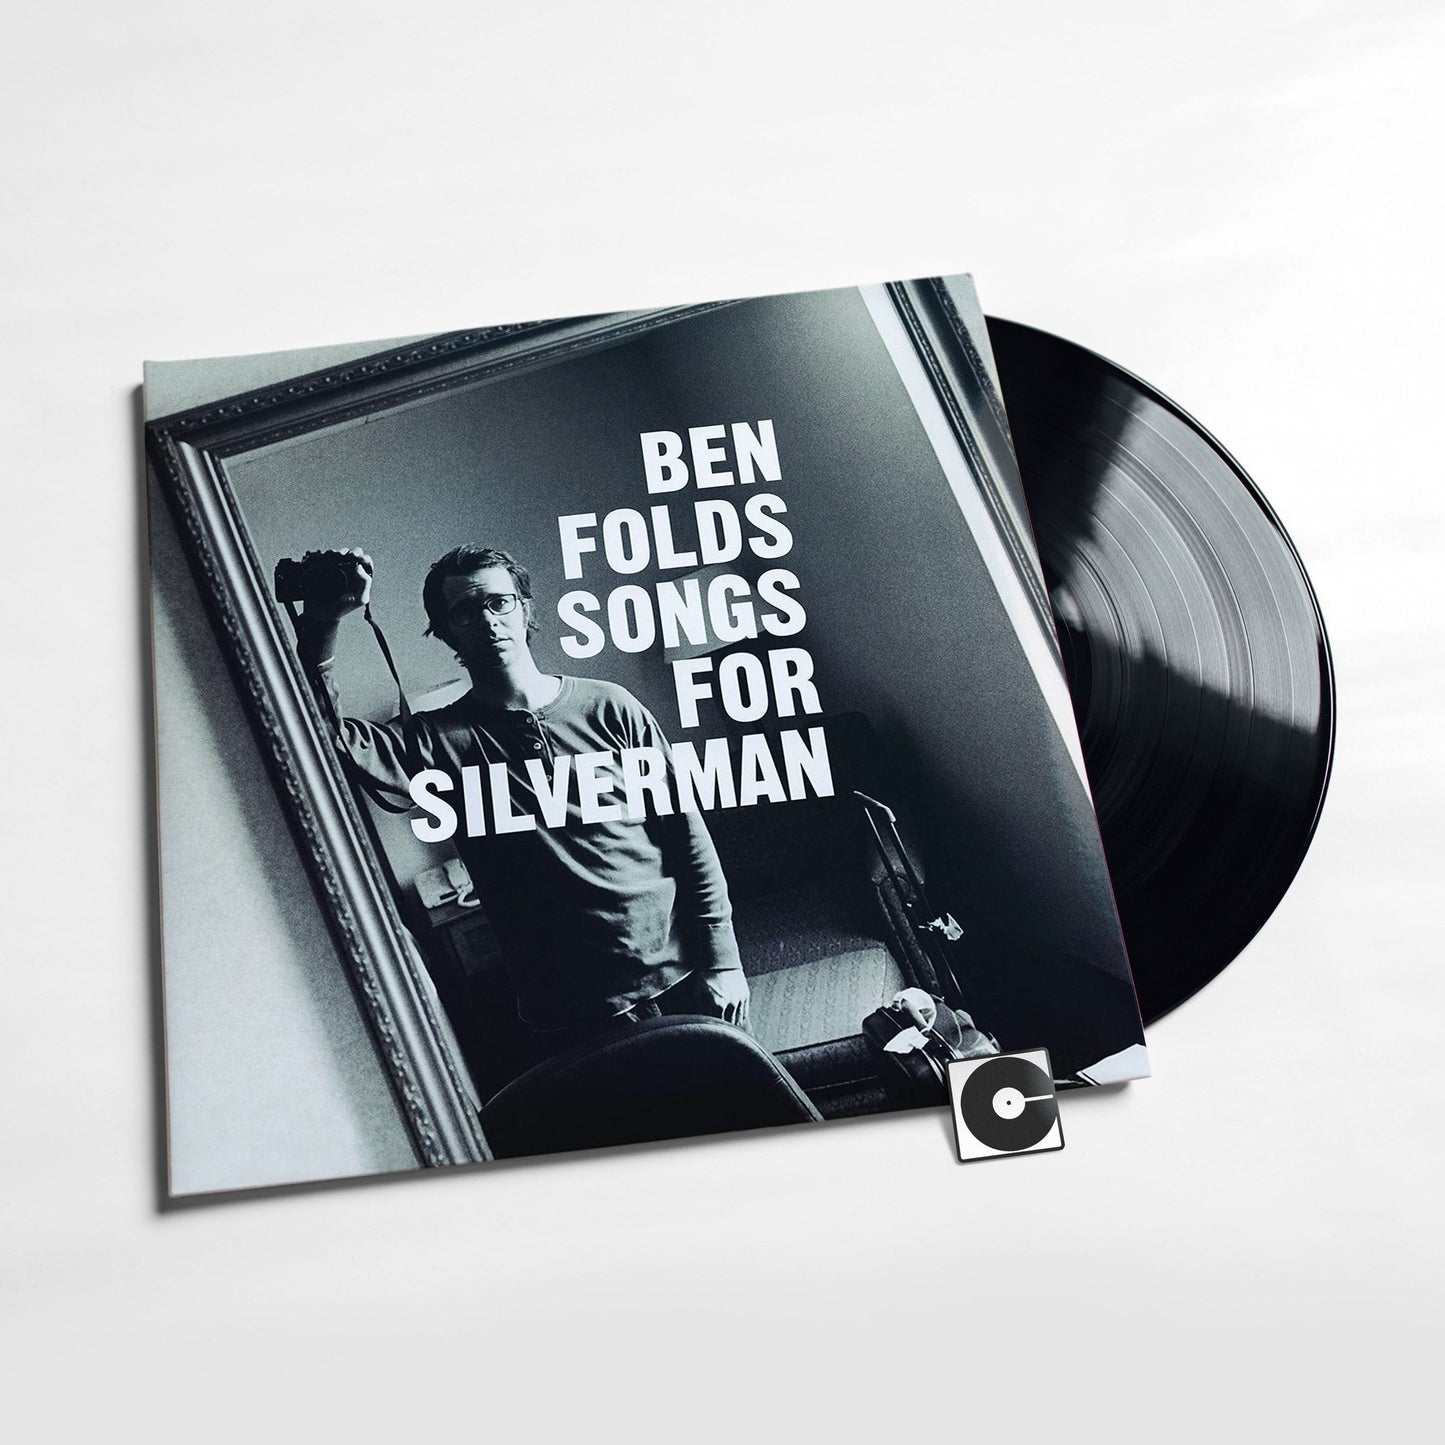 Ben Folds - "Songs For Silverman"